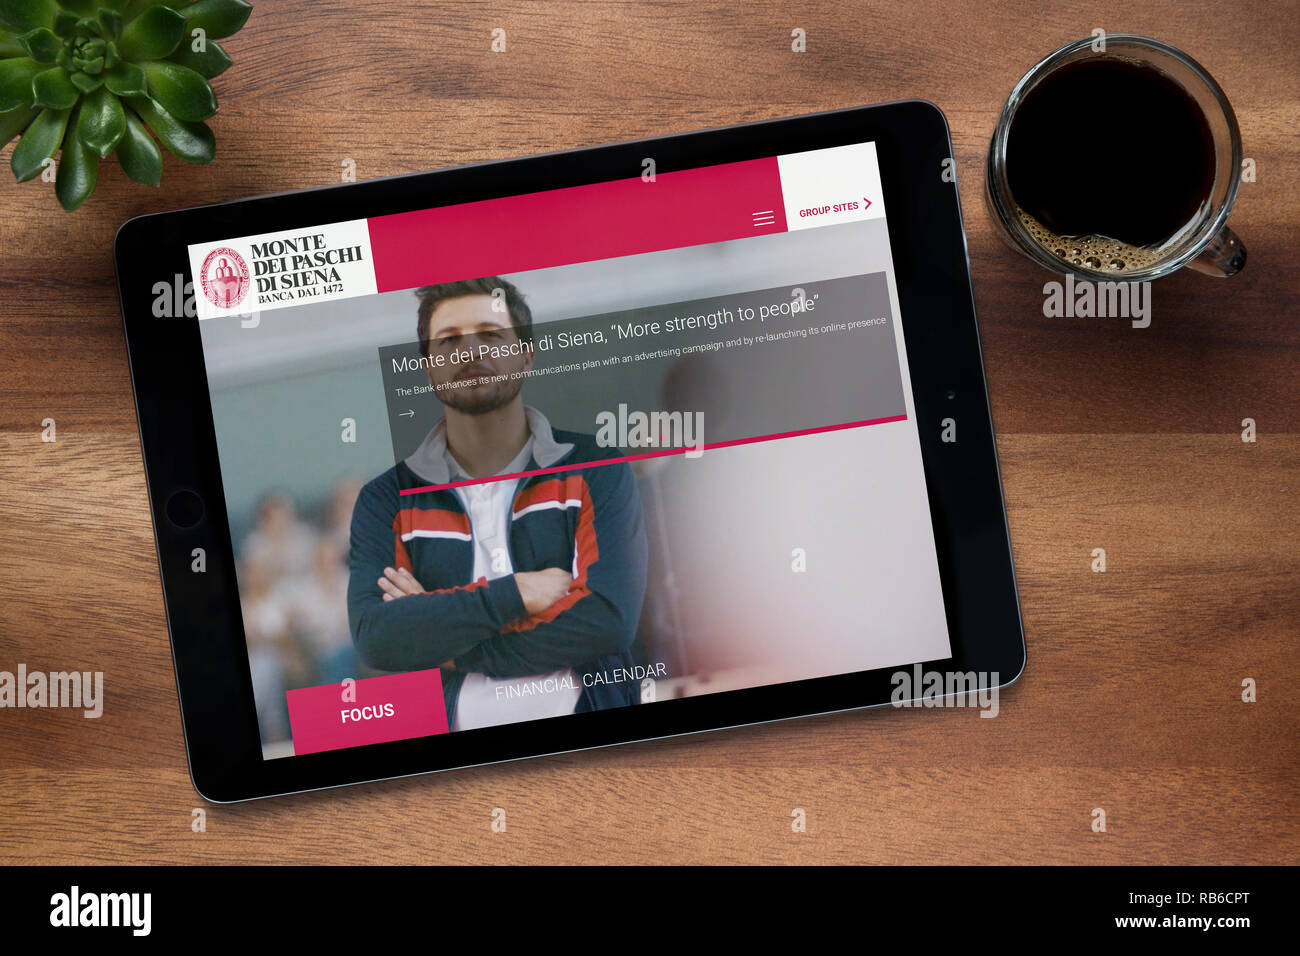 Die Website von Monte dei Paschi Di Siena Banca gesehen auf einem iPad Tablet ruht auf einem Holztisch (nur redaktionelle Nutzung). Stockfoto